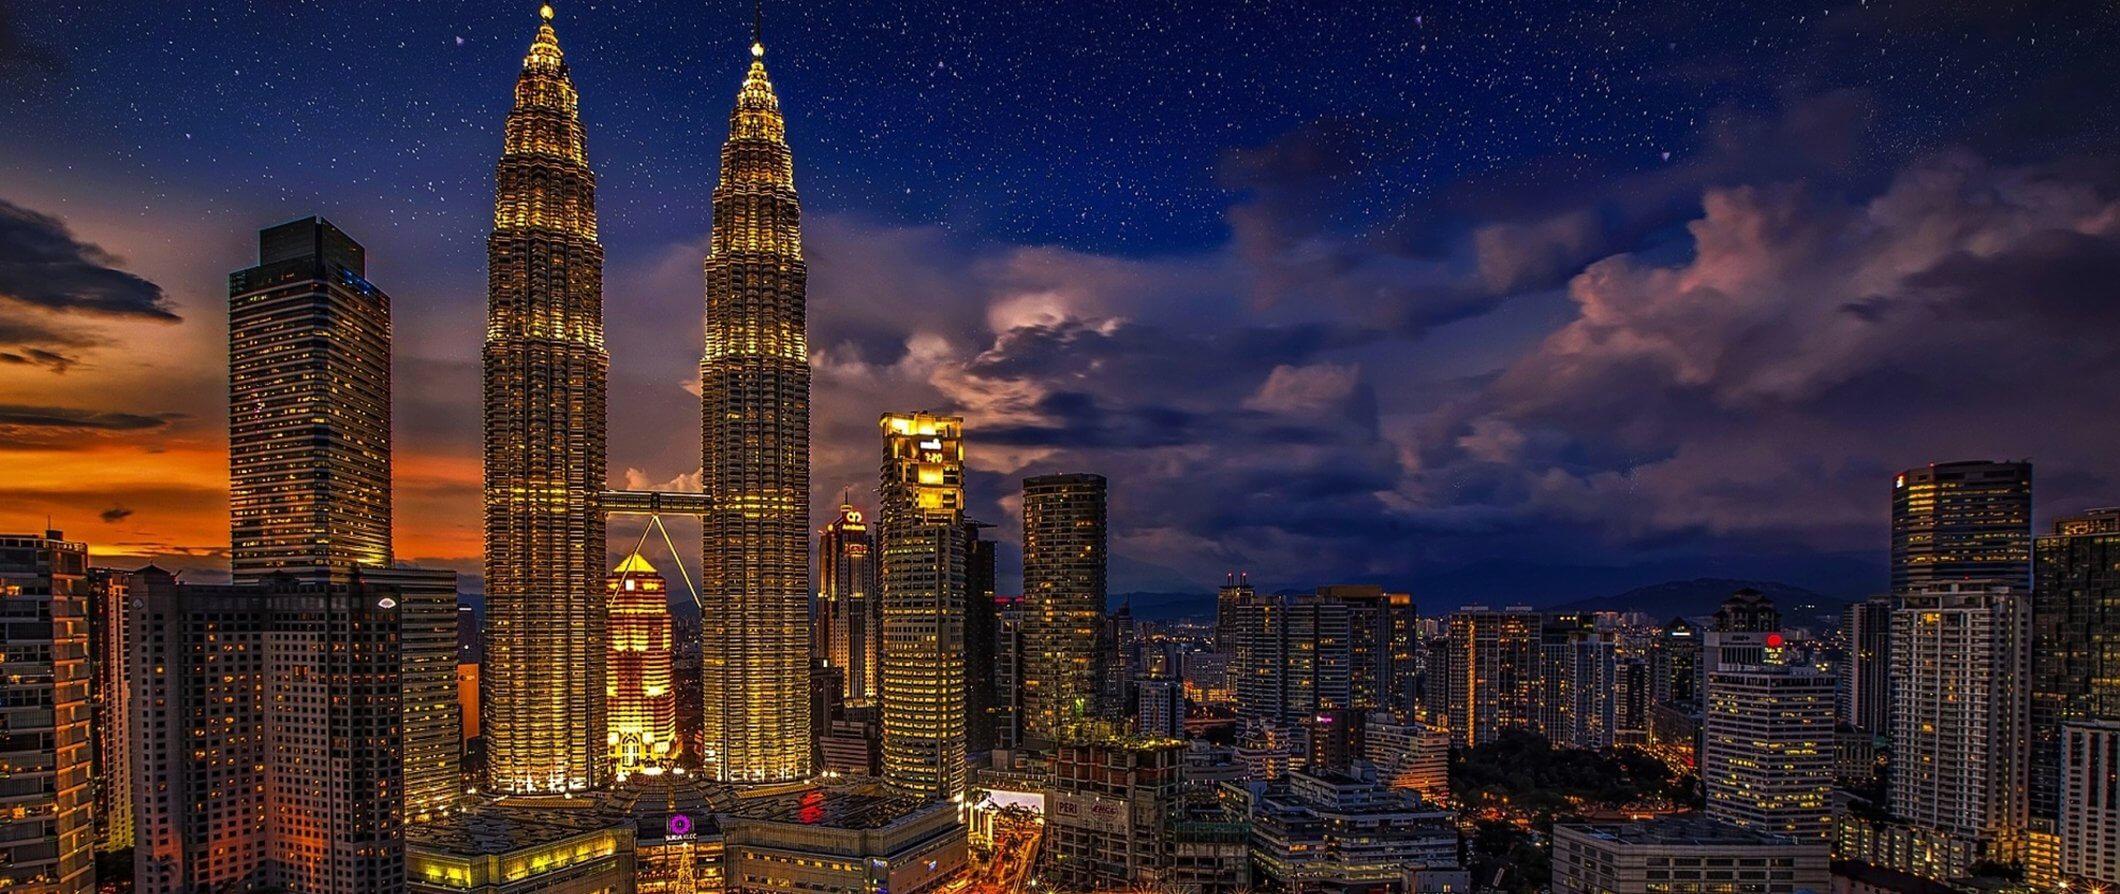 Uma linha impressionante do horizonte de Kuala Lumpur, iluminada à noite, com as torres de Petronas